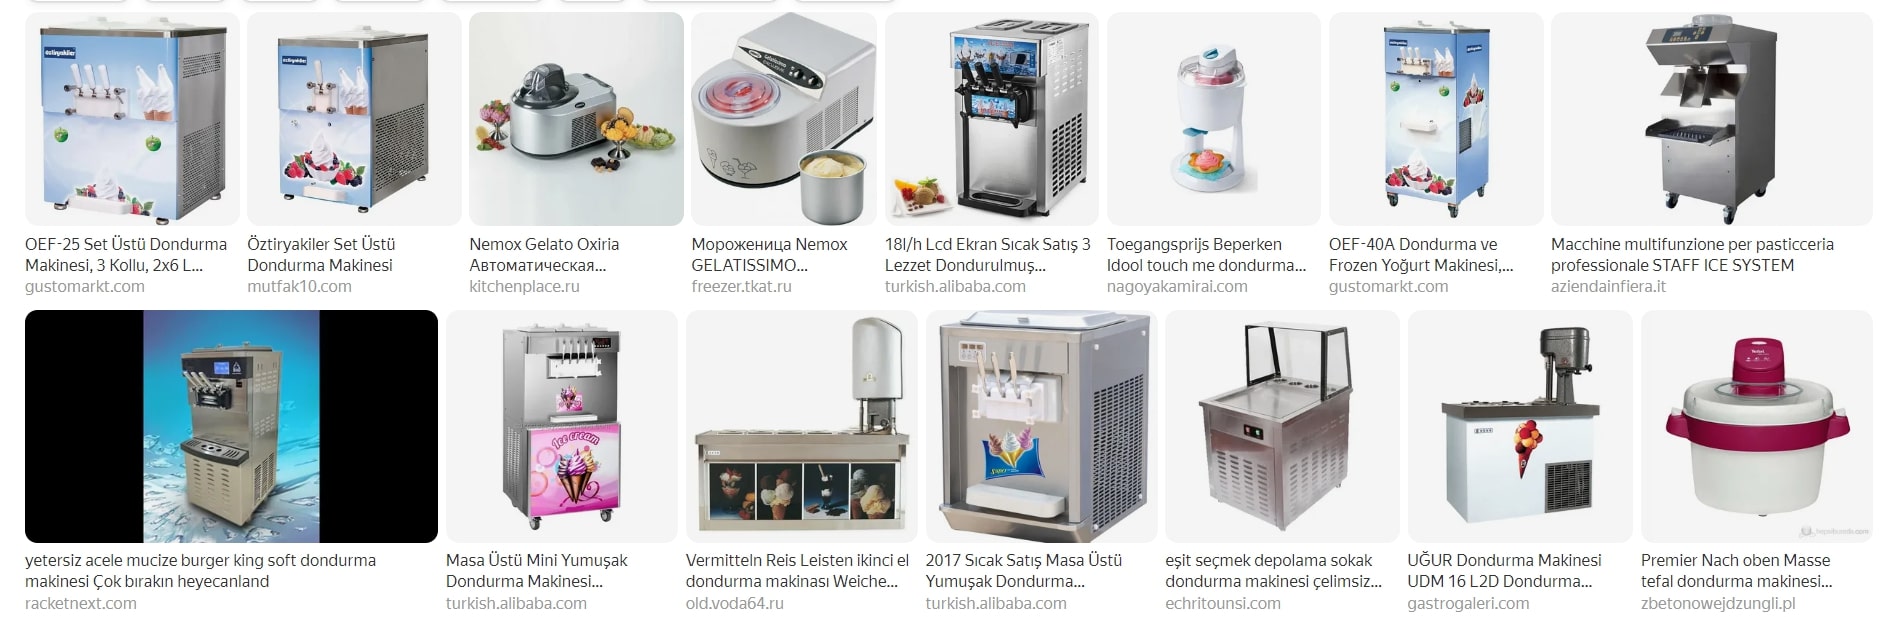 Dondurma makinesi Fiyatları, Dondurma makinesi Fiyatları 2023